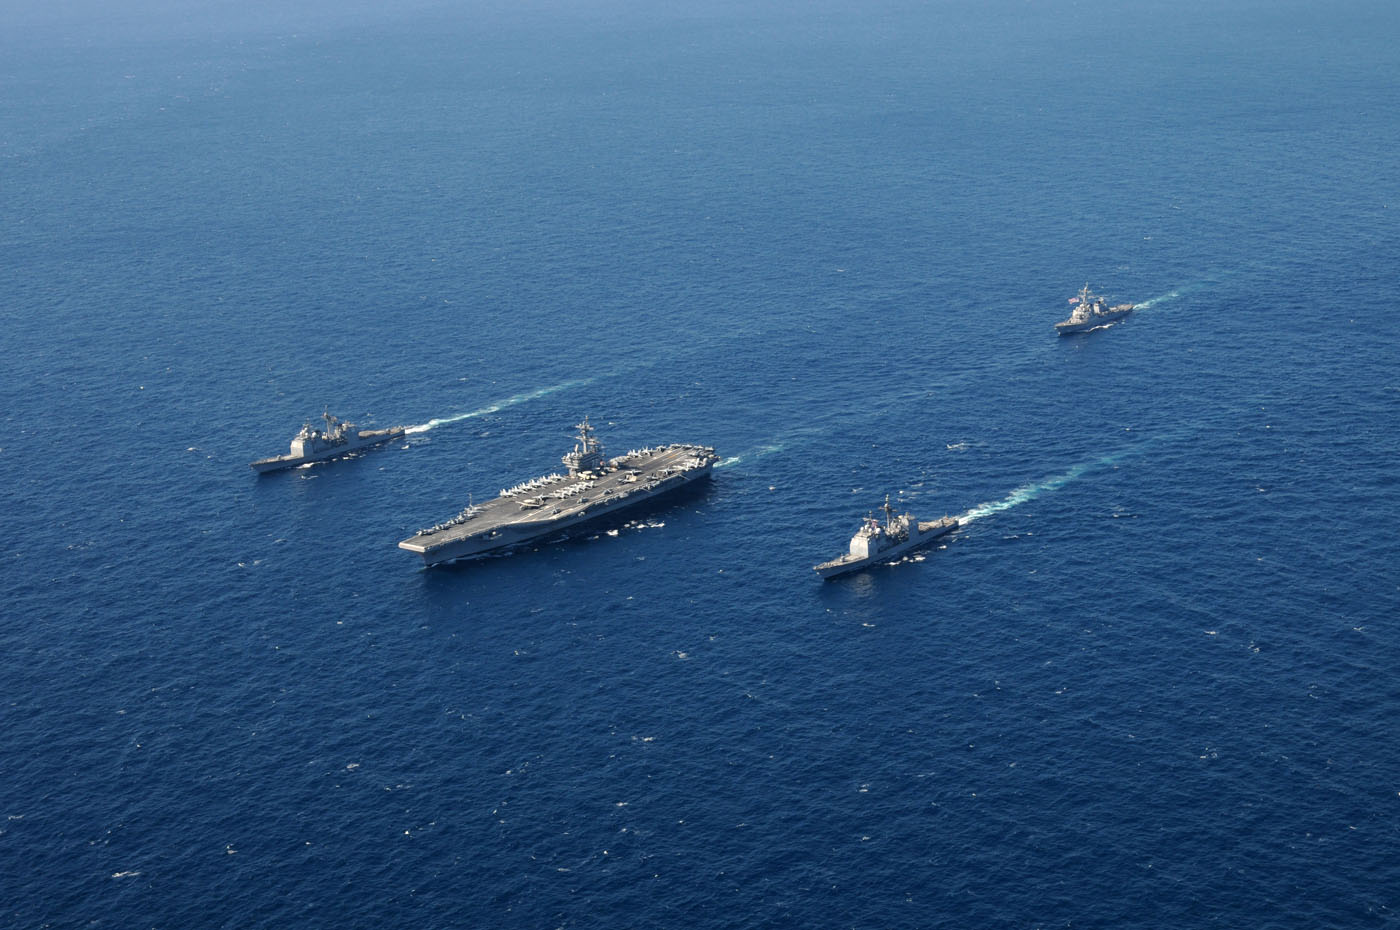 US_Navy_101022-N-4154B-407_The_aircraft_carrier_USS_George_H.W._Bush_(CVN_77)_participates_in_a_group_sail.jpg